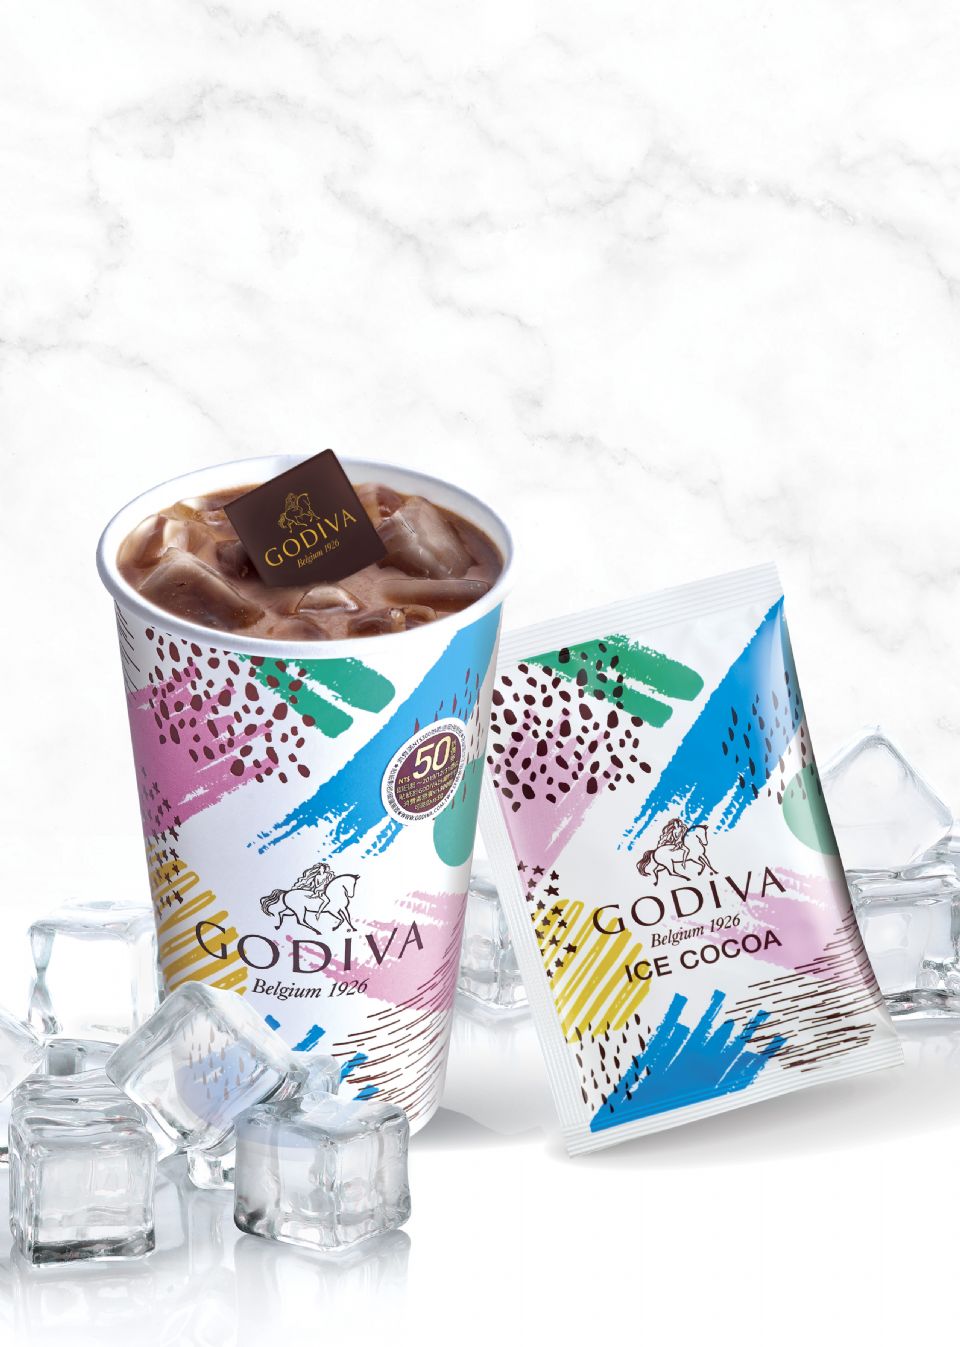 7-11「GODIVA經典冰可可」有優惠了！夏天限量販售的GODIVA經典冰可可，在這期間還有89元的優惠～